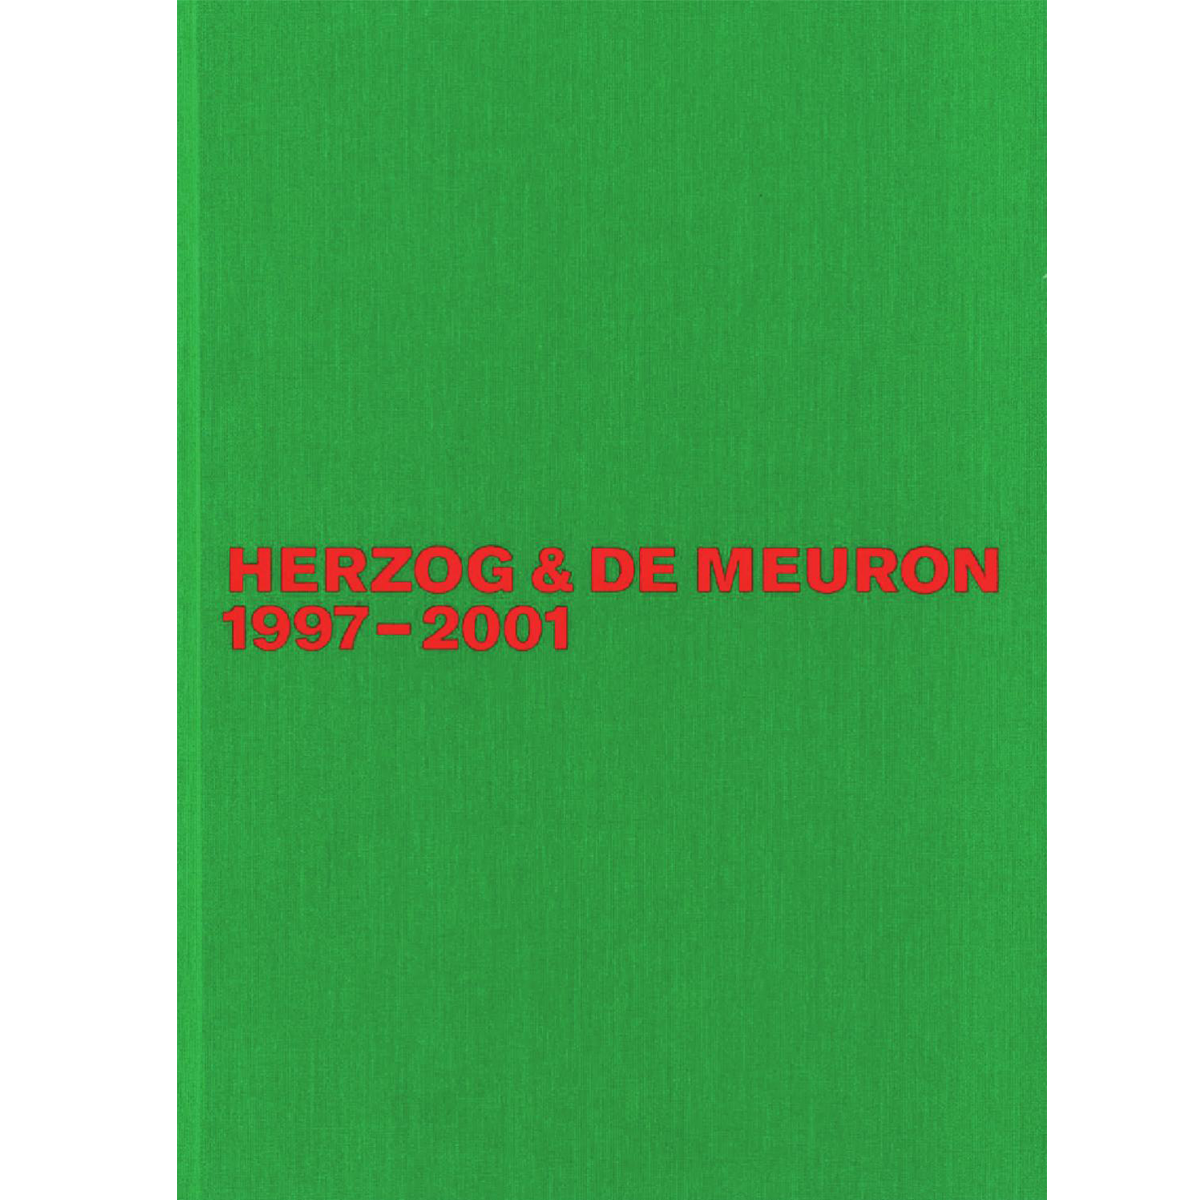 Herzog & de Meuron 1997-2001